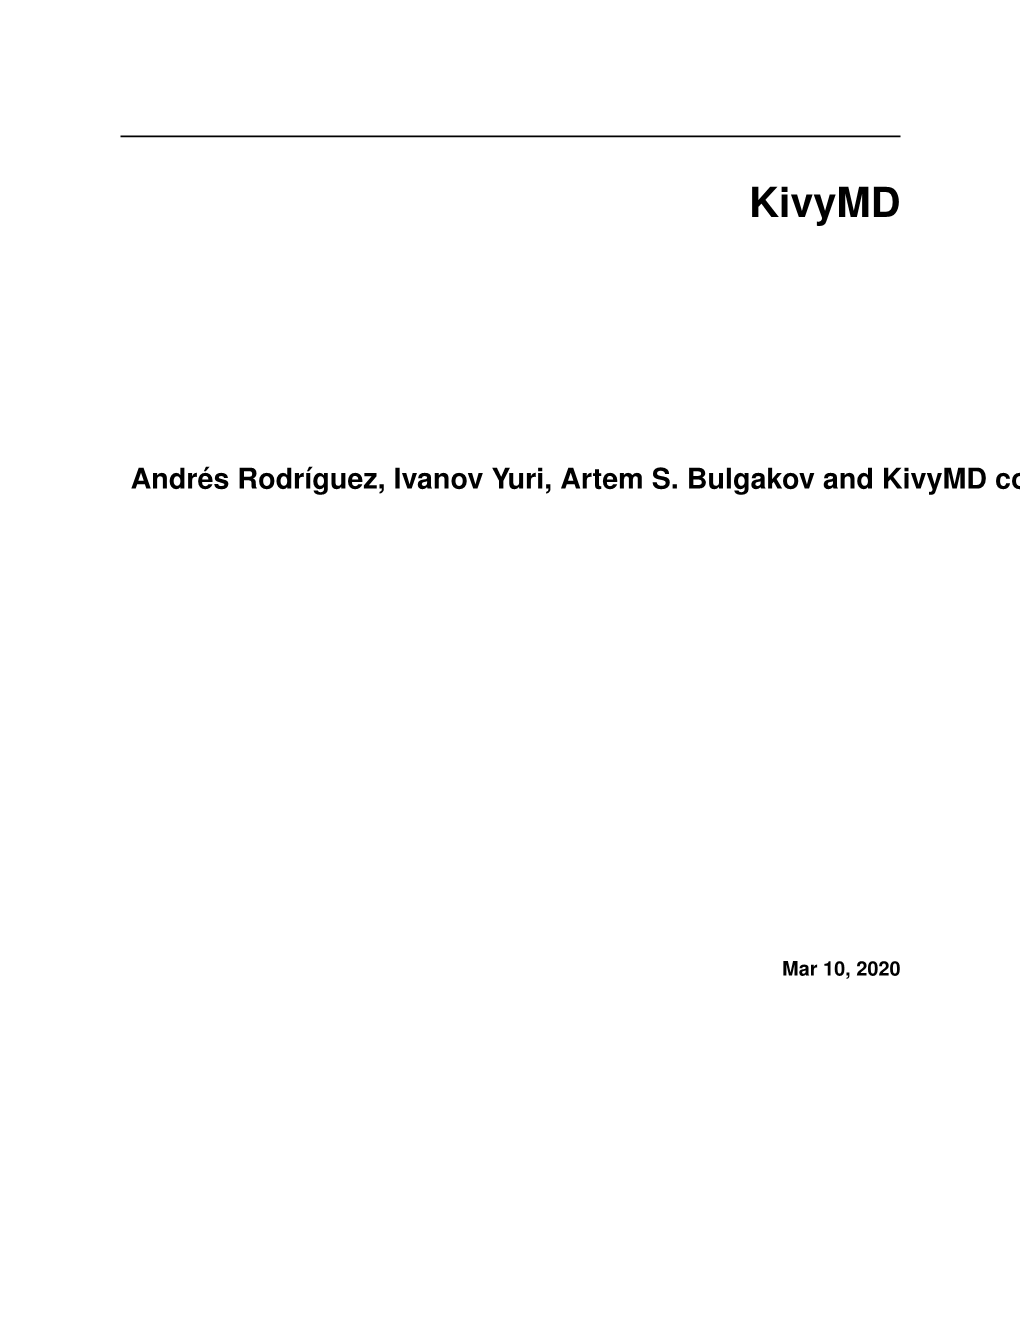 Kivymd's Documentation!